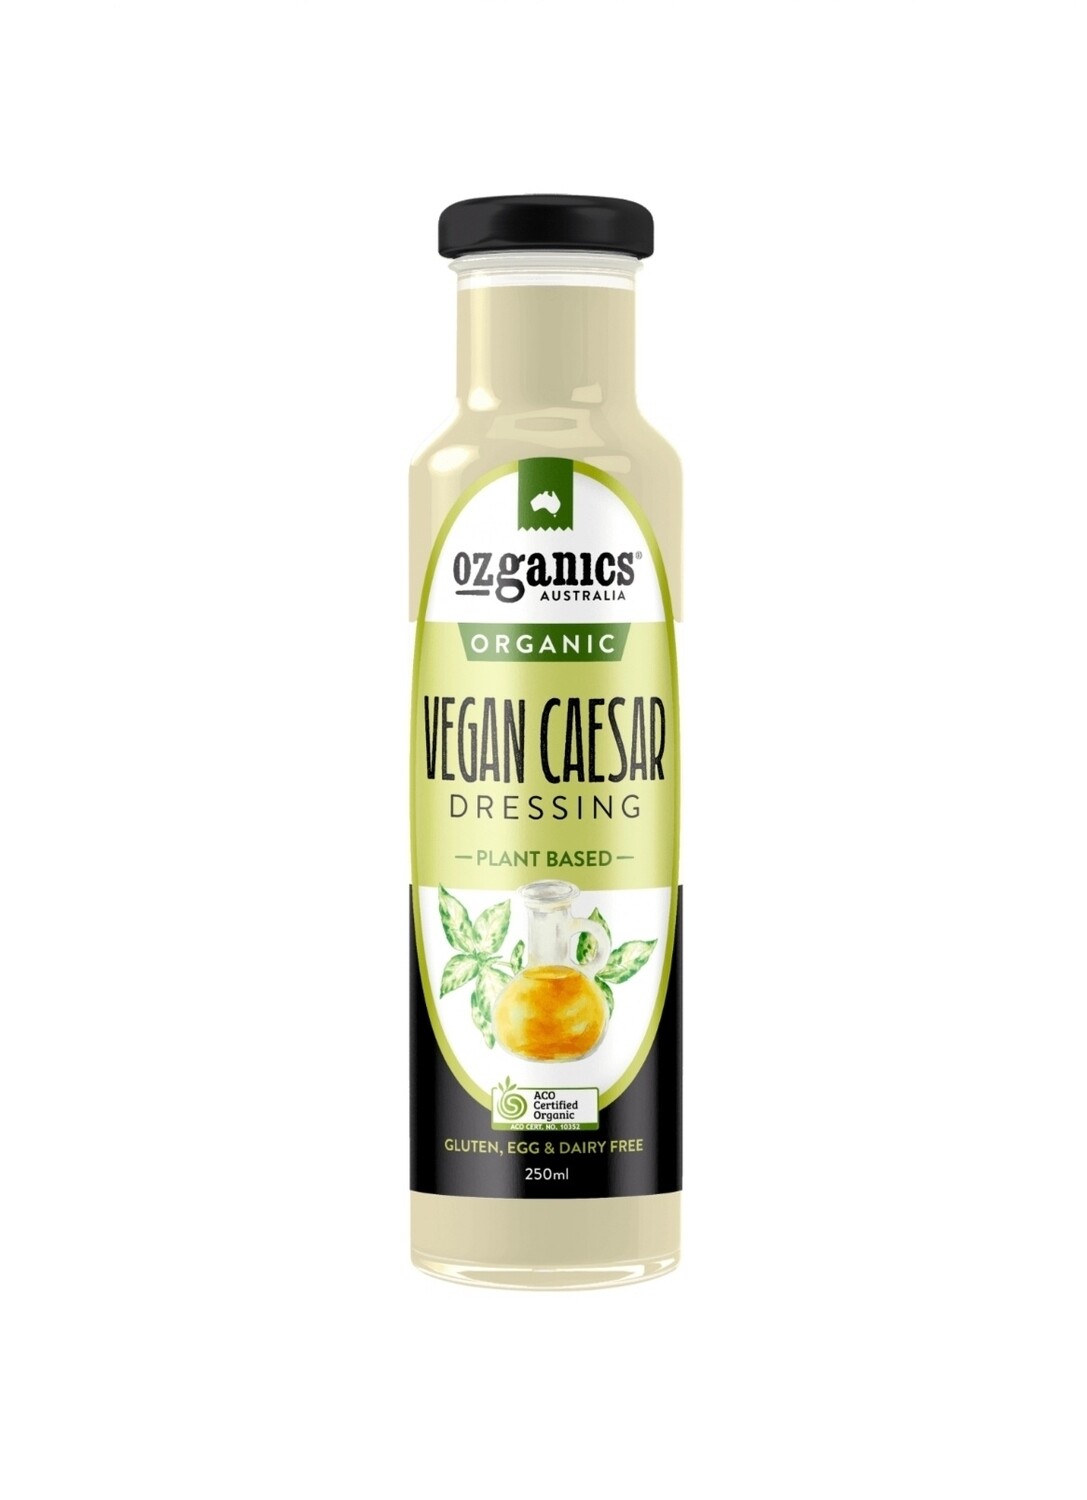 Ozganics Vegan Caesar Dressing Organic 250ml